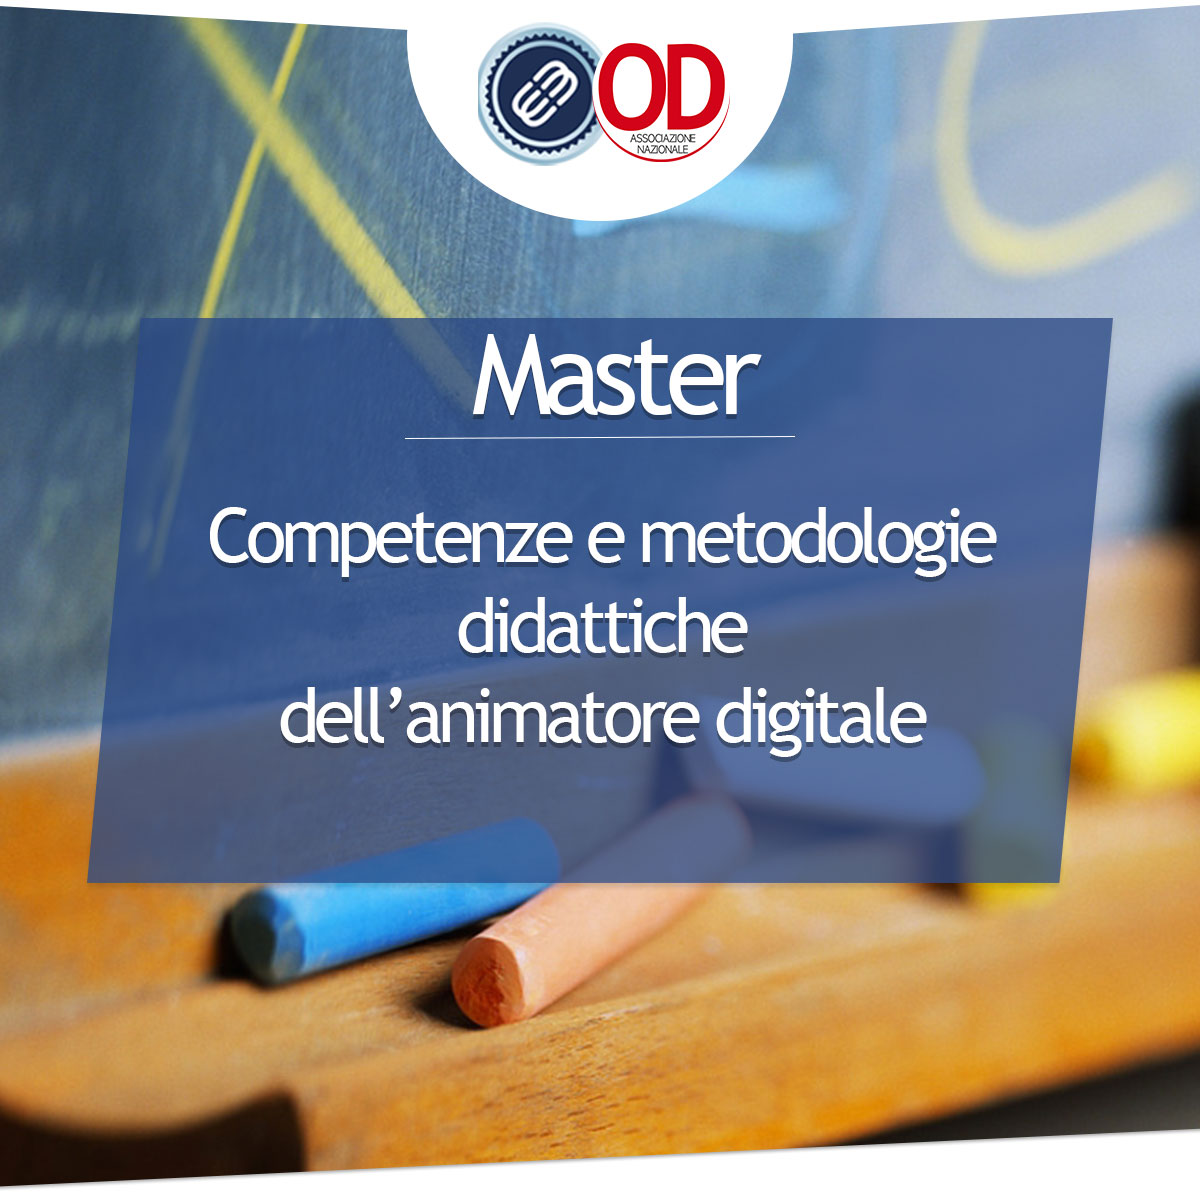 Master competenze e metodologie didattiche animatore digitale